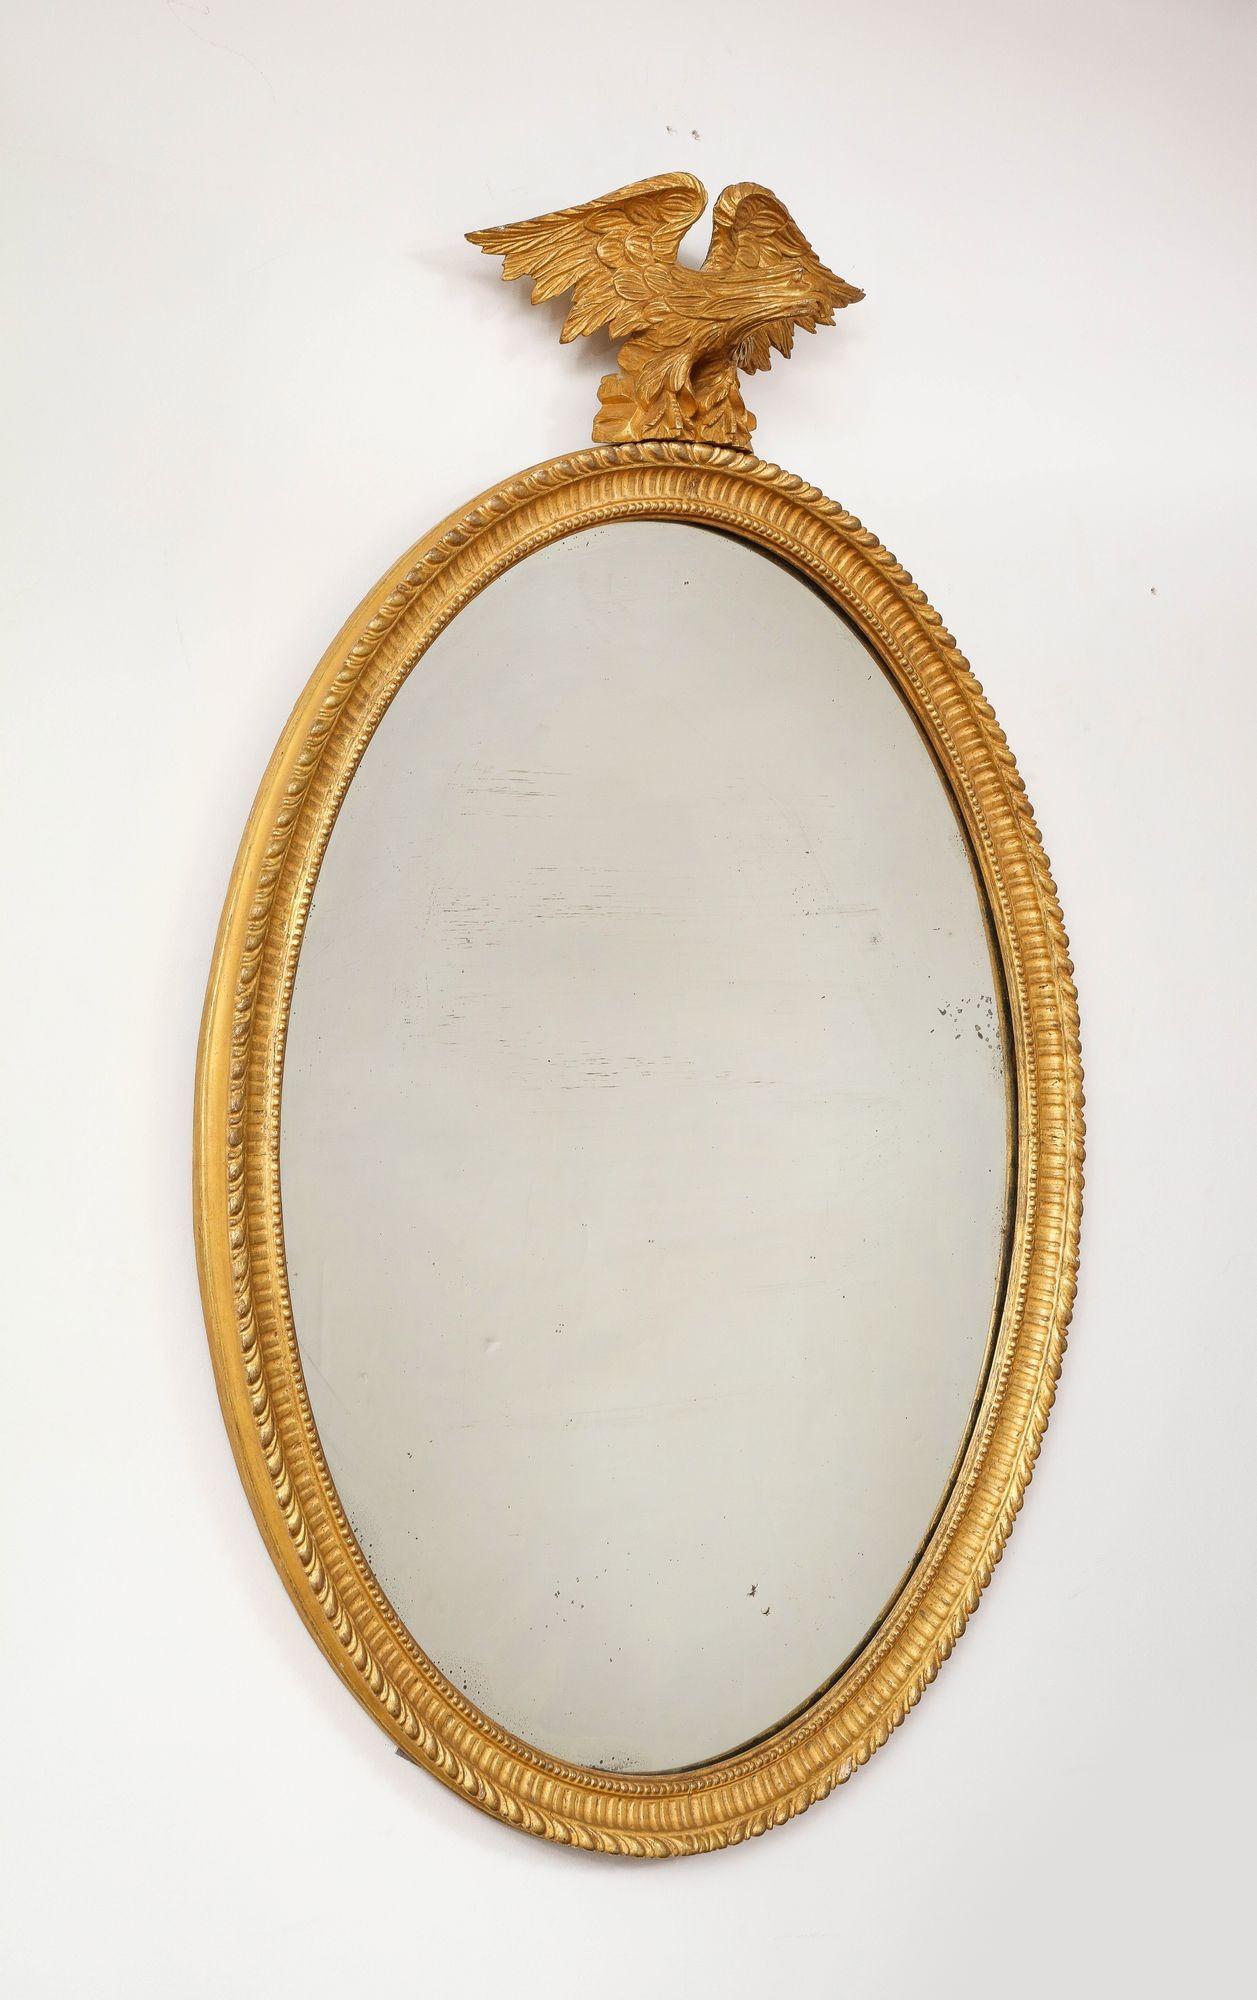 Feine George III oval vergoldetem klassischem Spiegel, der geschnitzte Adler Wappen steht auf einem Rockwork Basis, über einem gadroon geschnitzt ovalen Rahmen mit Kanneluren und Wulst innere Kante, mit original Quecksilberglas Spiegelplatte. 